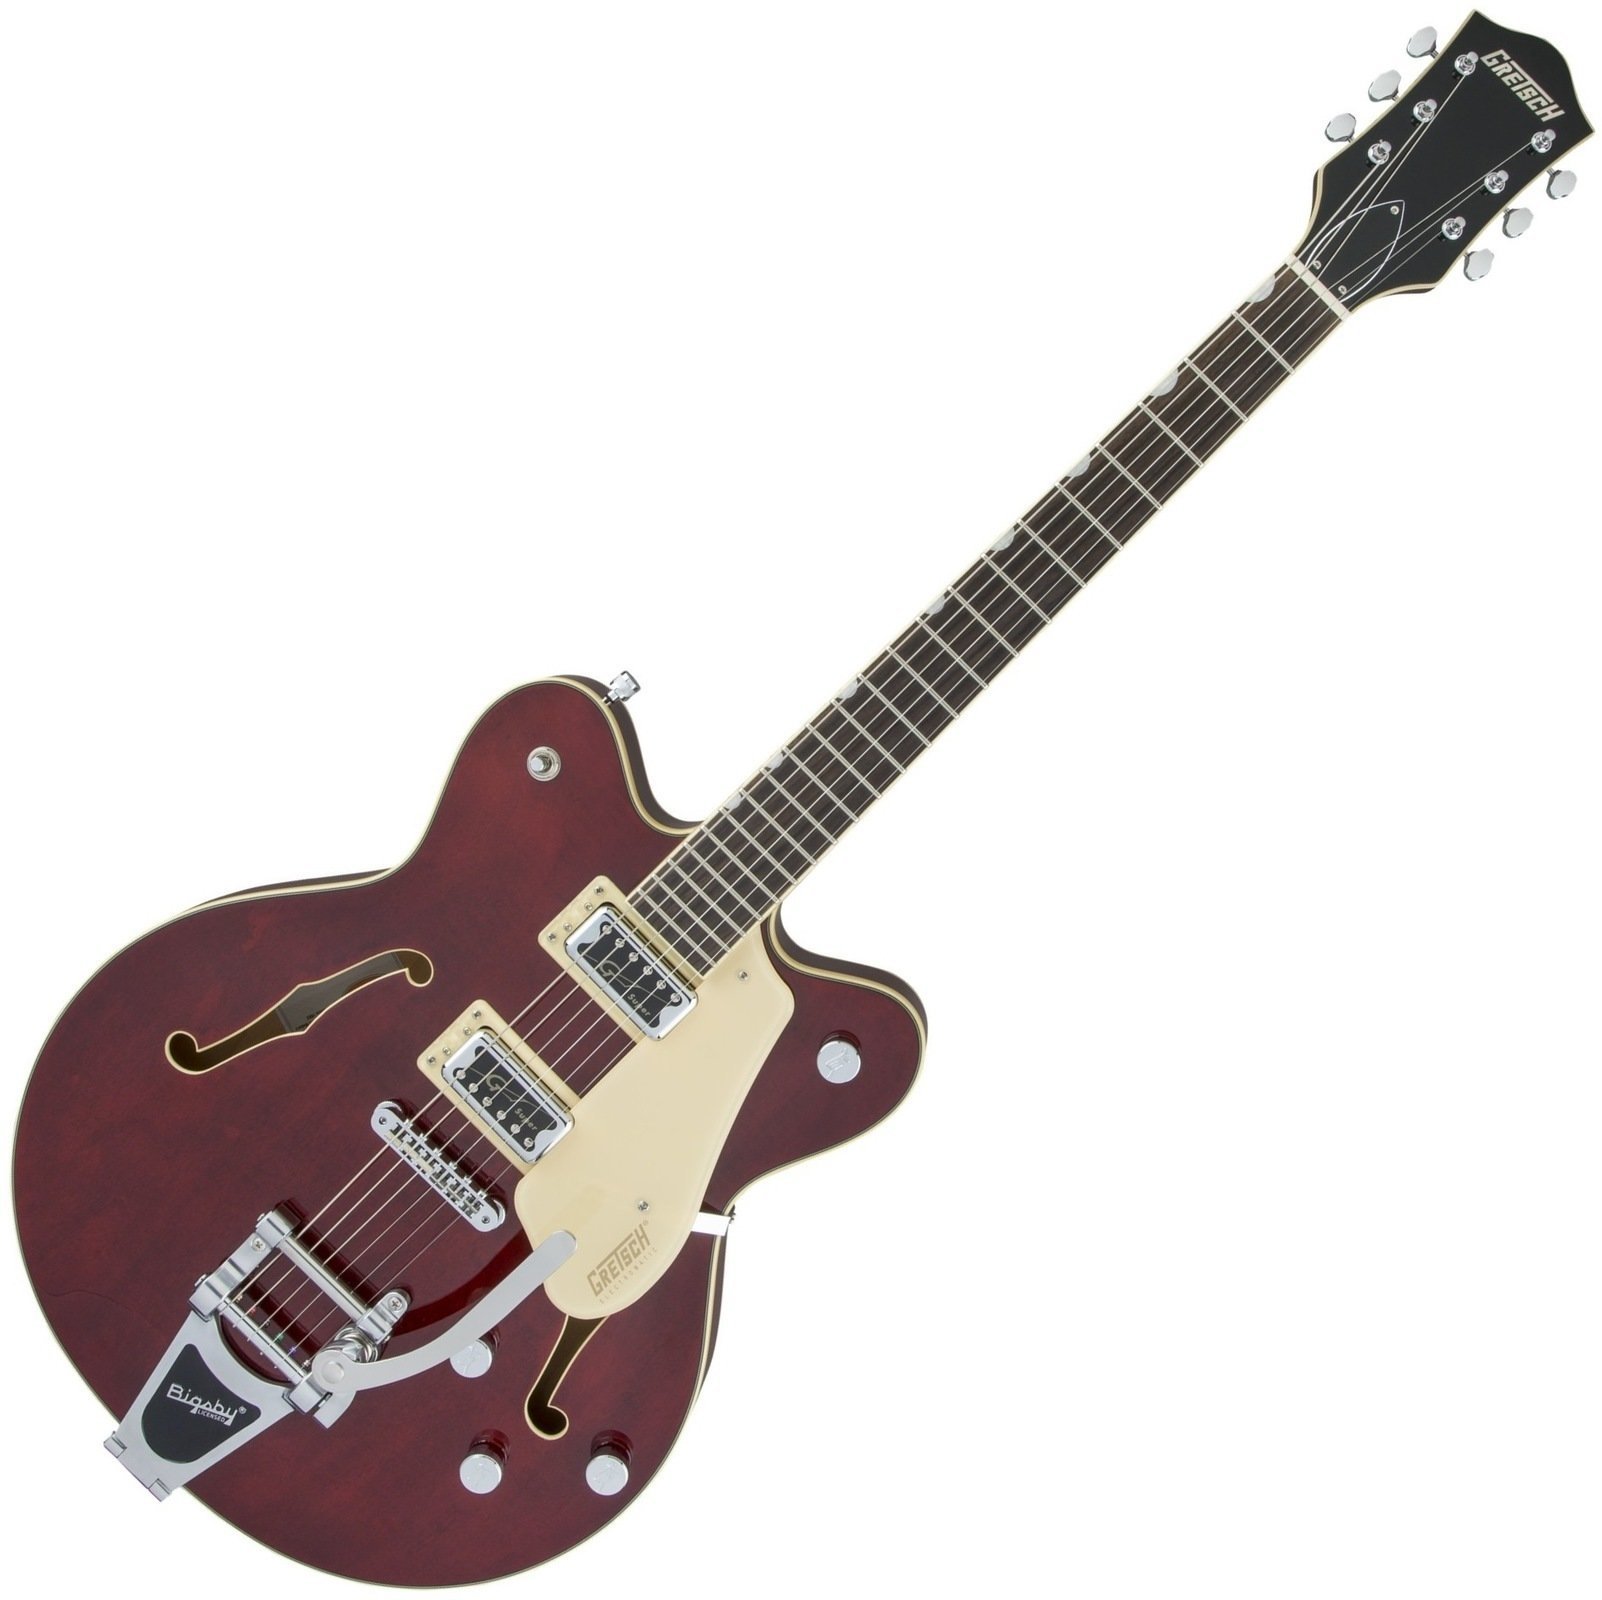 Джаз китара Gretsch G5622T Electromatic Double Cutaway RW Walnut